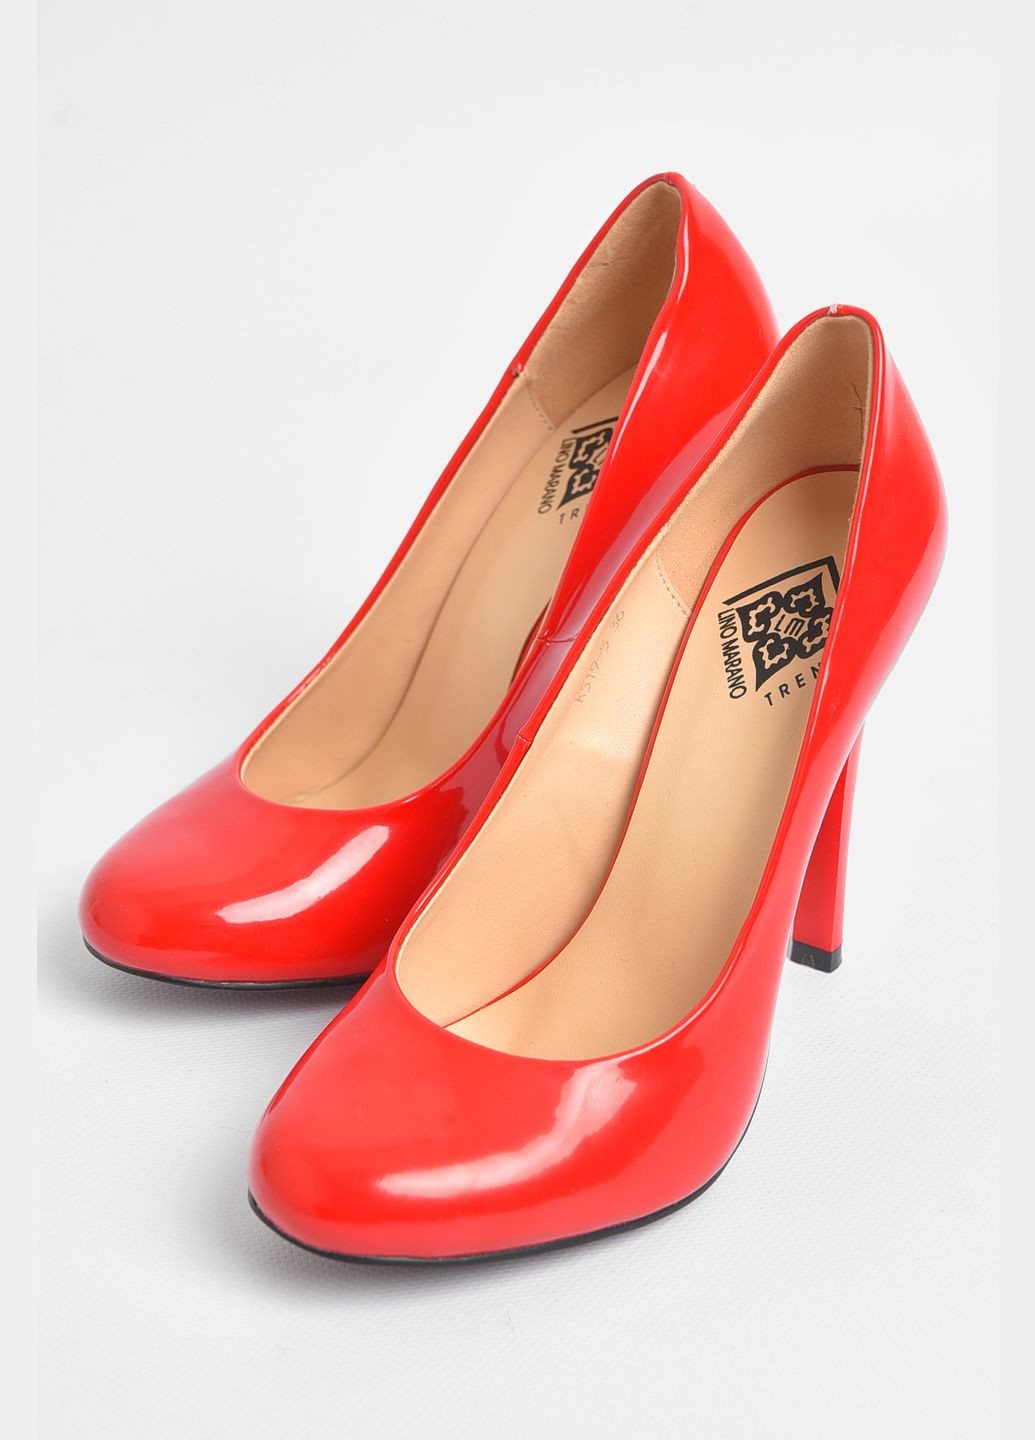 Туфли женские красного цвета Let's Shop на высоком каблуке